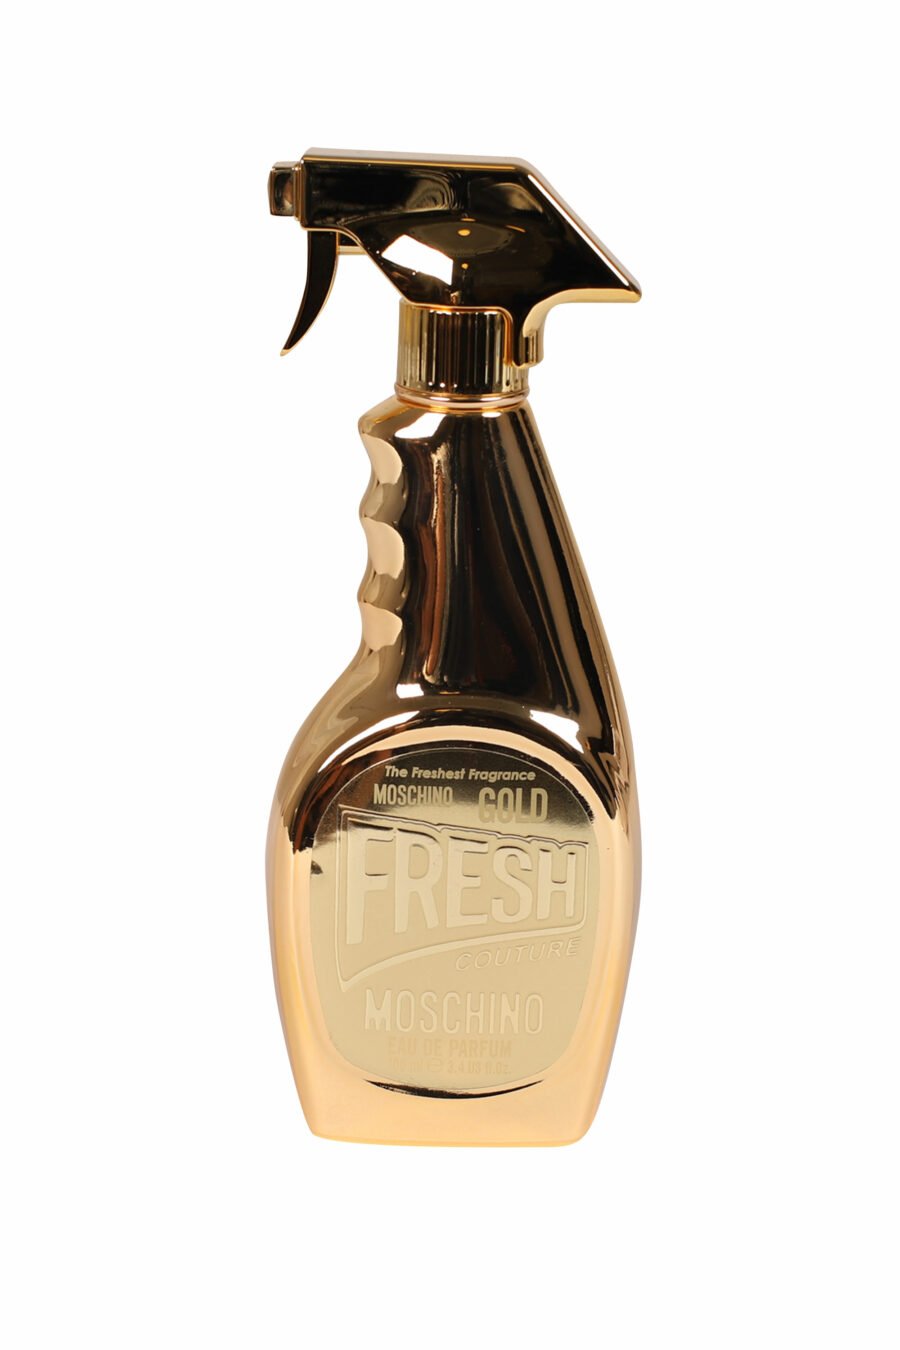 Moschino "Fresh Gold" eau de parfum - Fotos 3327